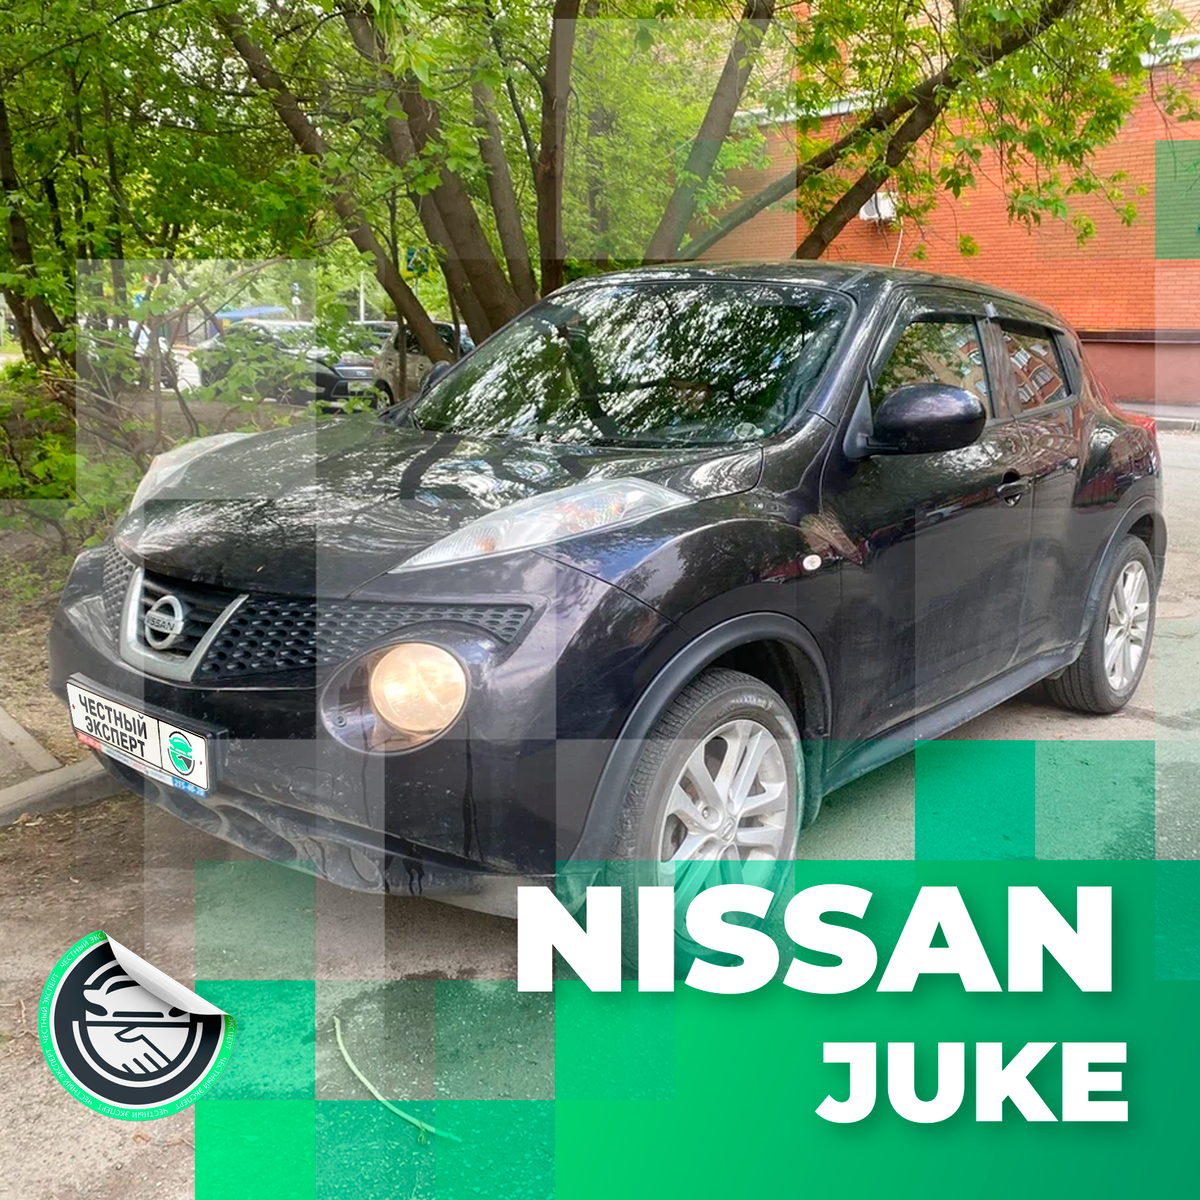 #АвтоподборЧЭ #ПодборЧЭNissan

Часто автомобили очень похожи друг на друга, но Nissan Juke отличается уникальным запоминающимся дизайном. Поэтому на этом автомобиле в «толпе» вы точно не затеряетесь.